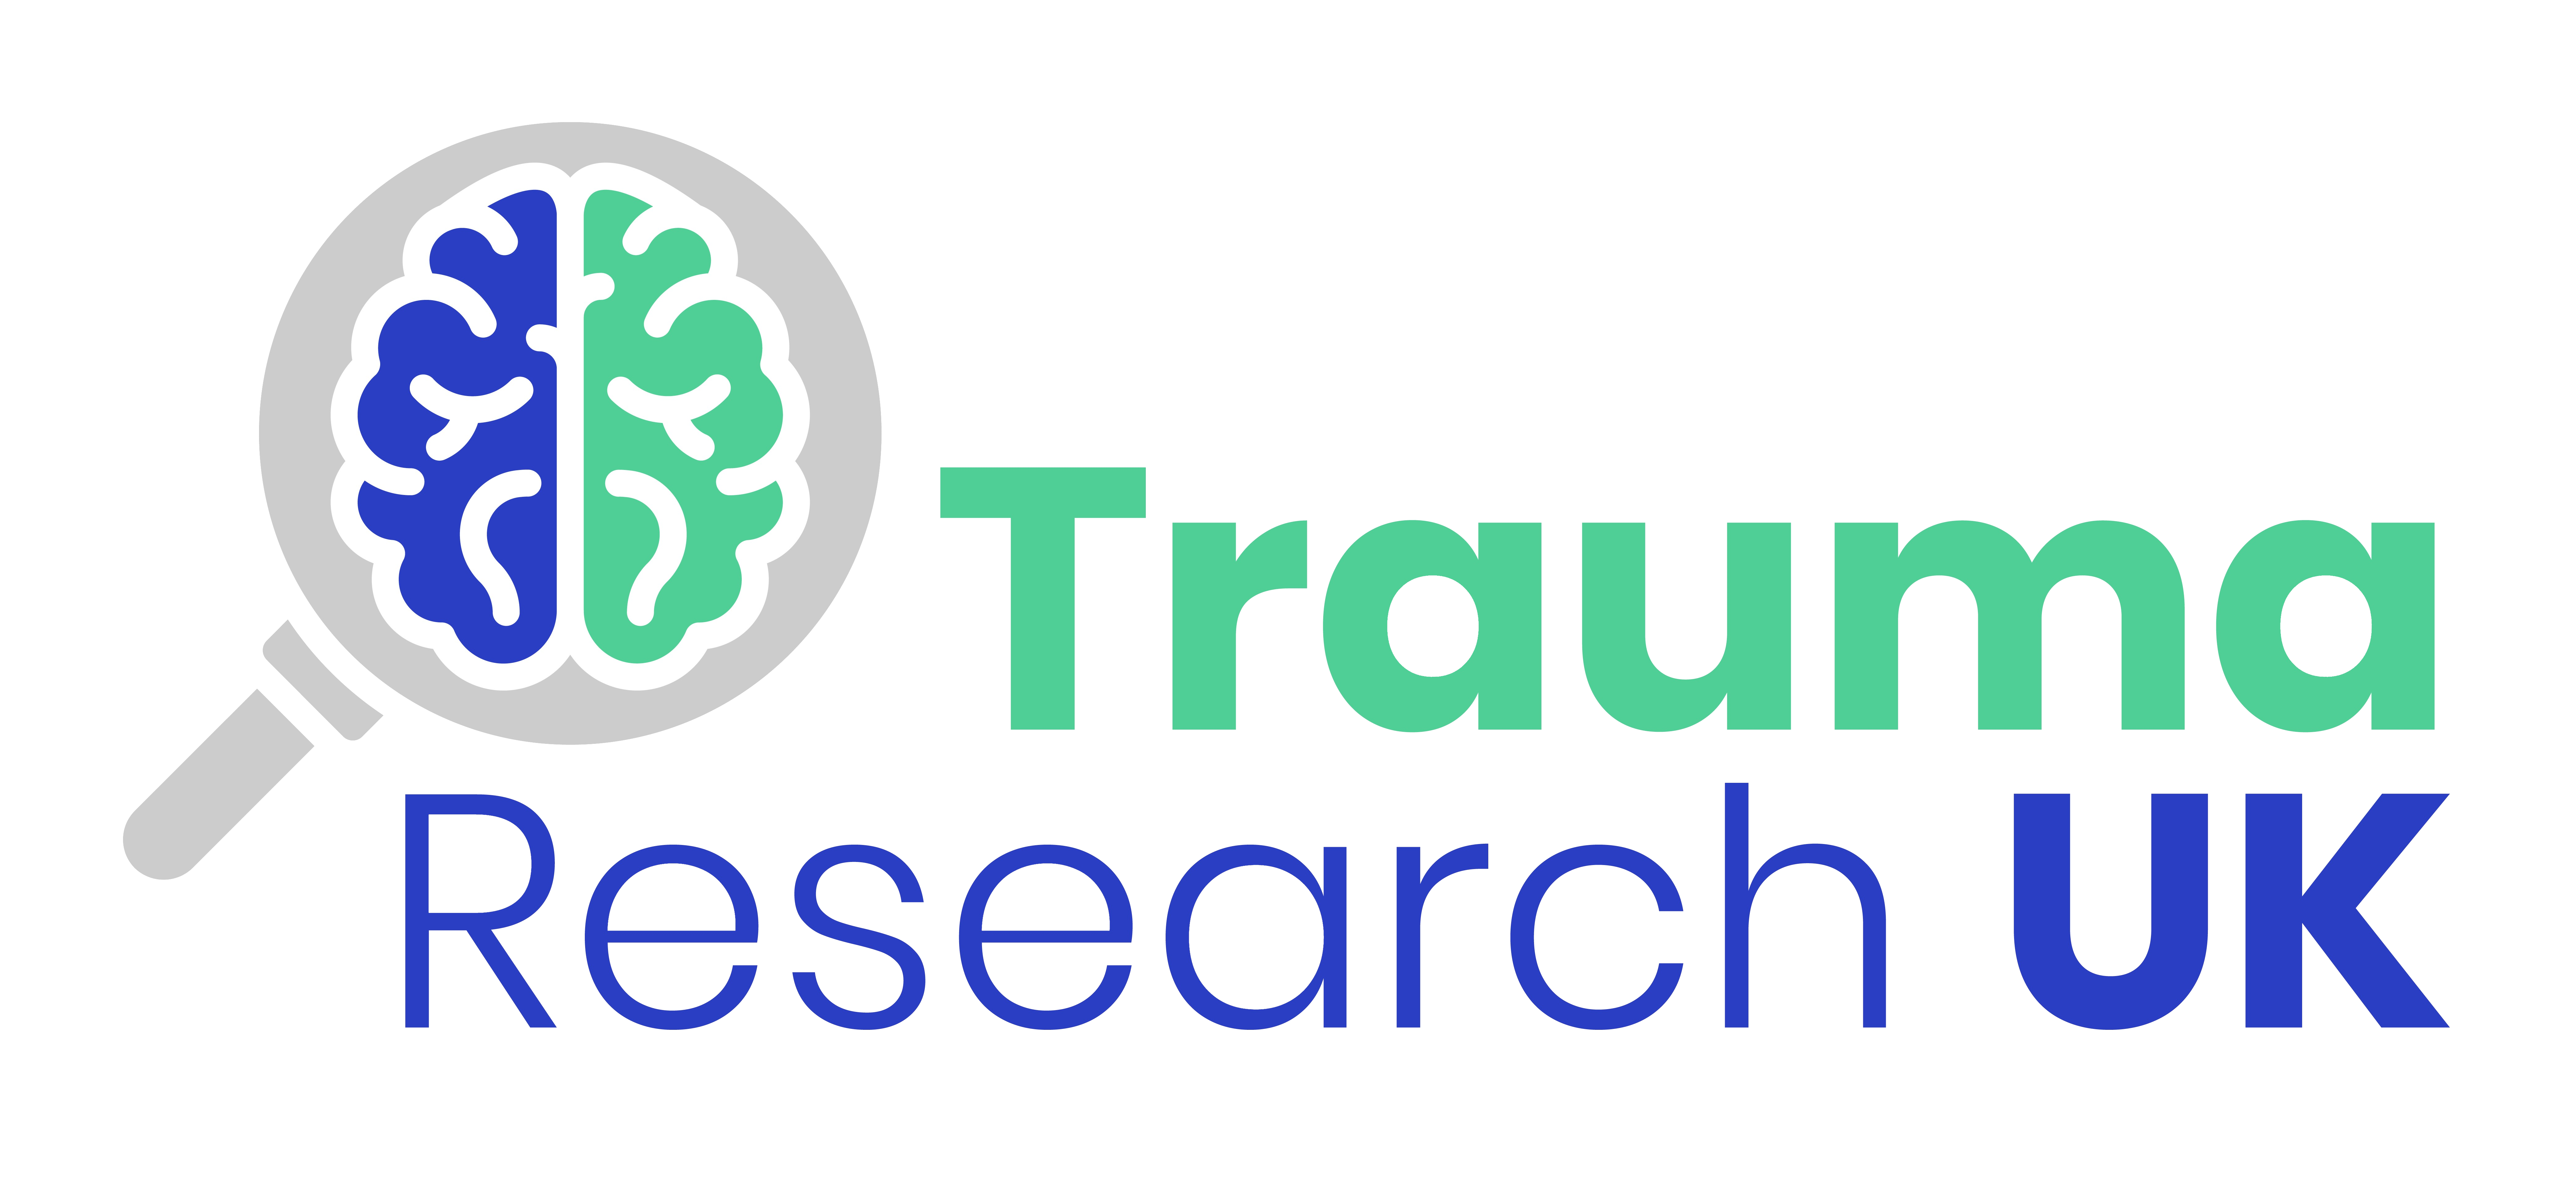 Trauma Research UK logo